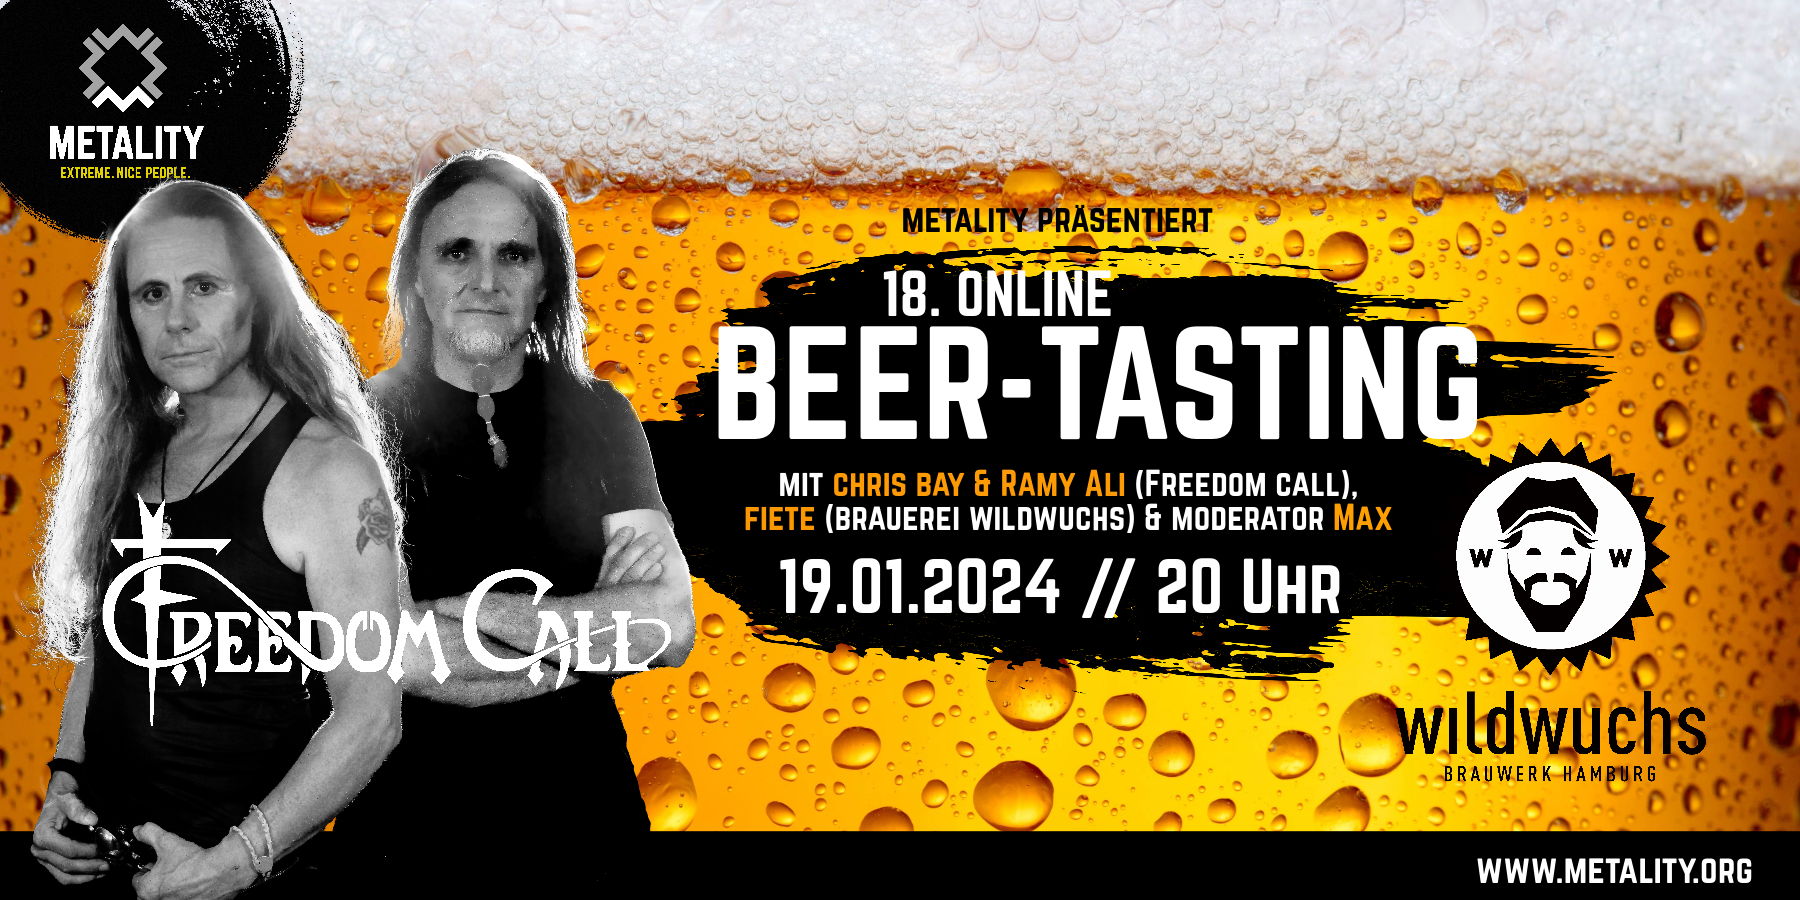 Beer Tasting mit Freedom Call und Brauerei Wildwuchs am 19. Januar 20 Uhr